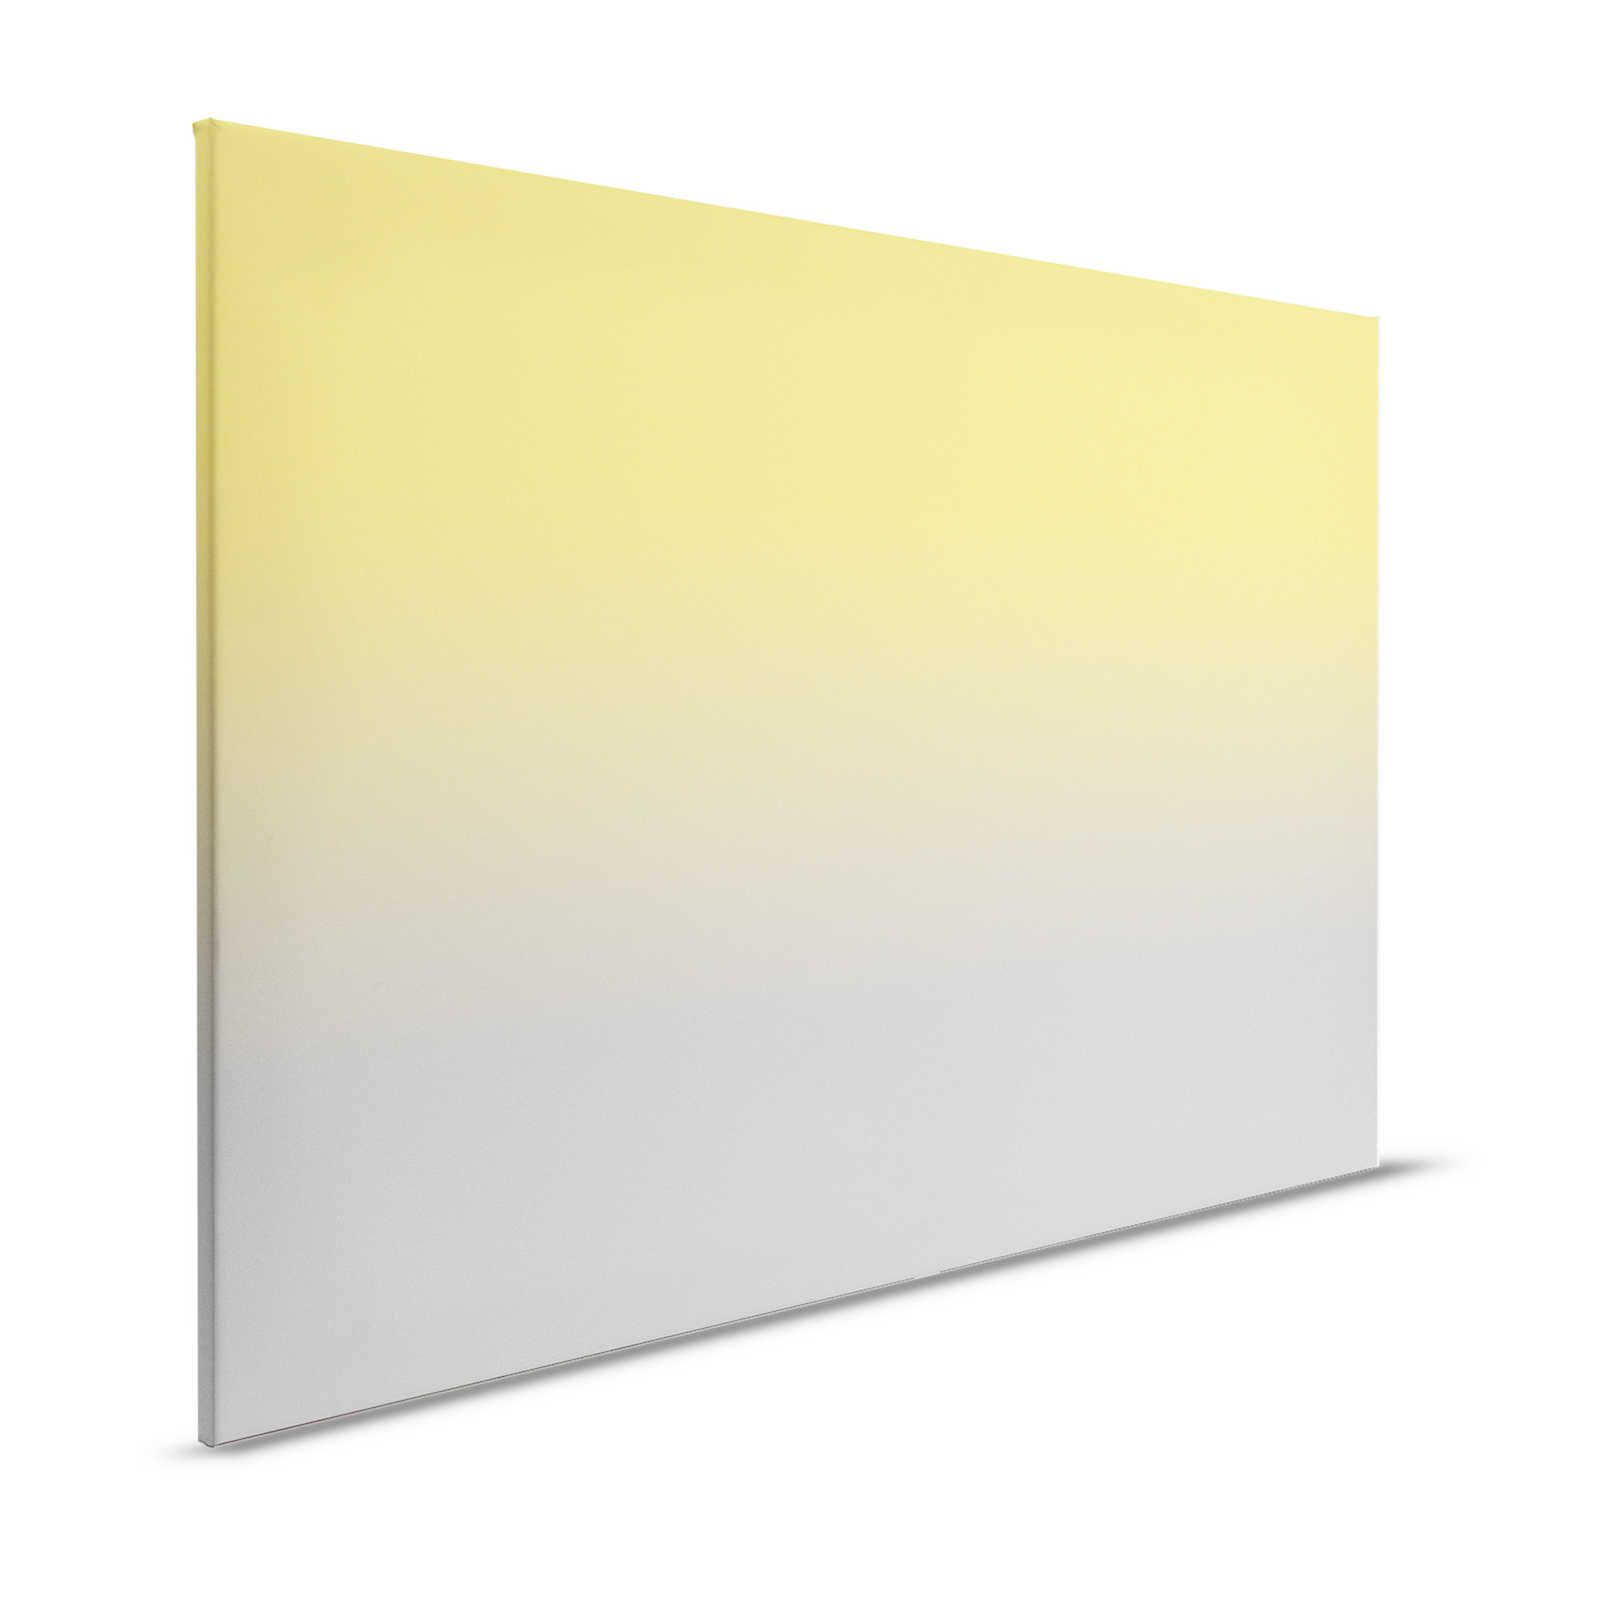 Colour Studio 1 - toile jaune et grise tendance effet ombré - 1,20 m x 0,80 m
